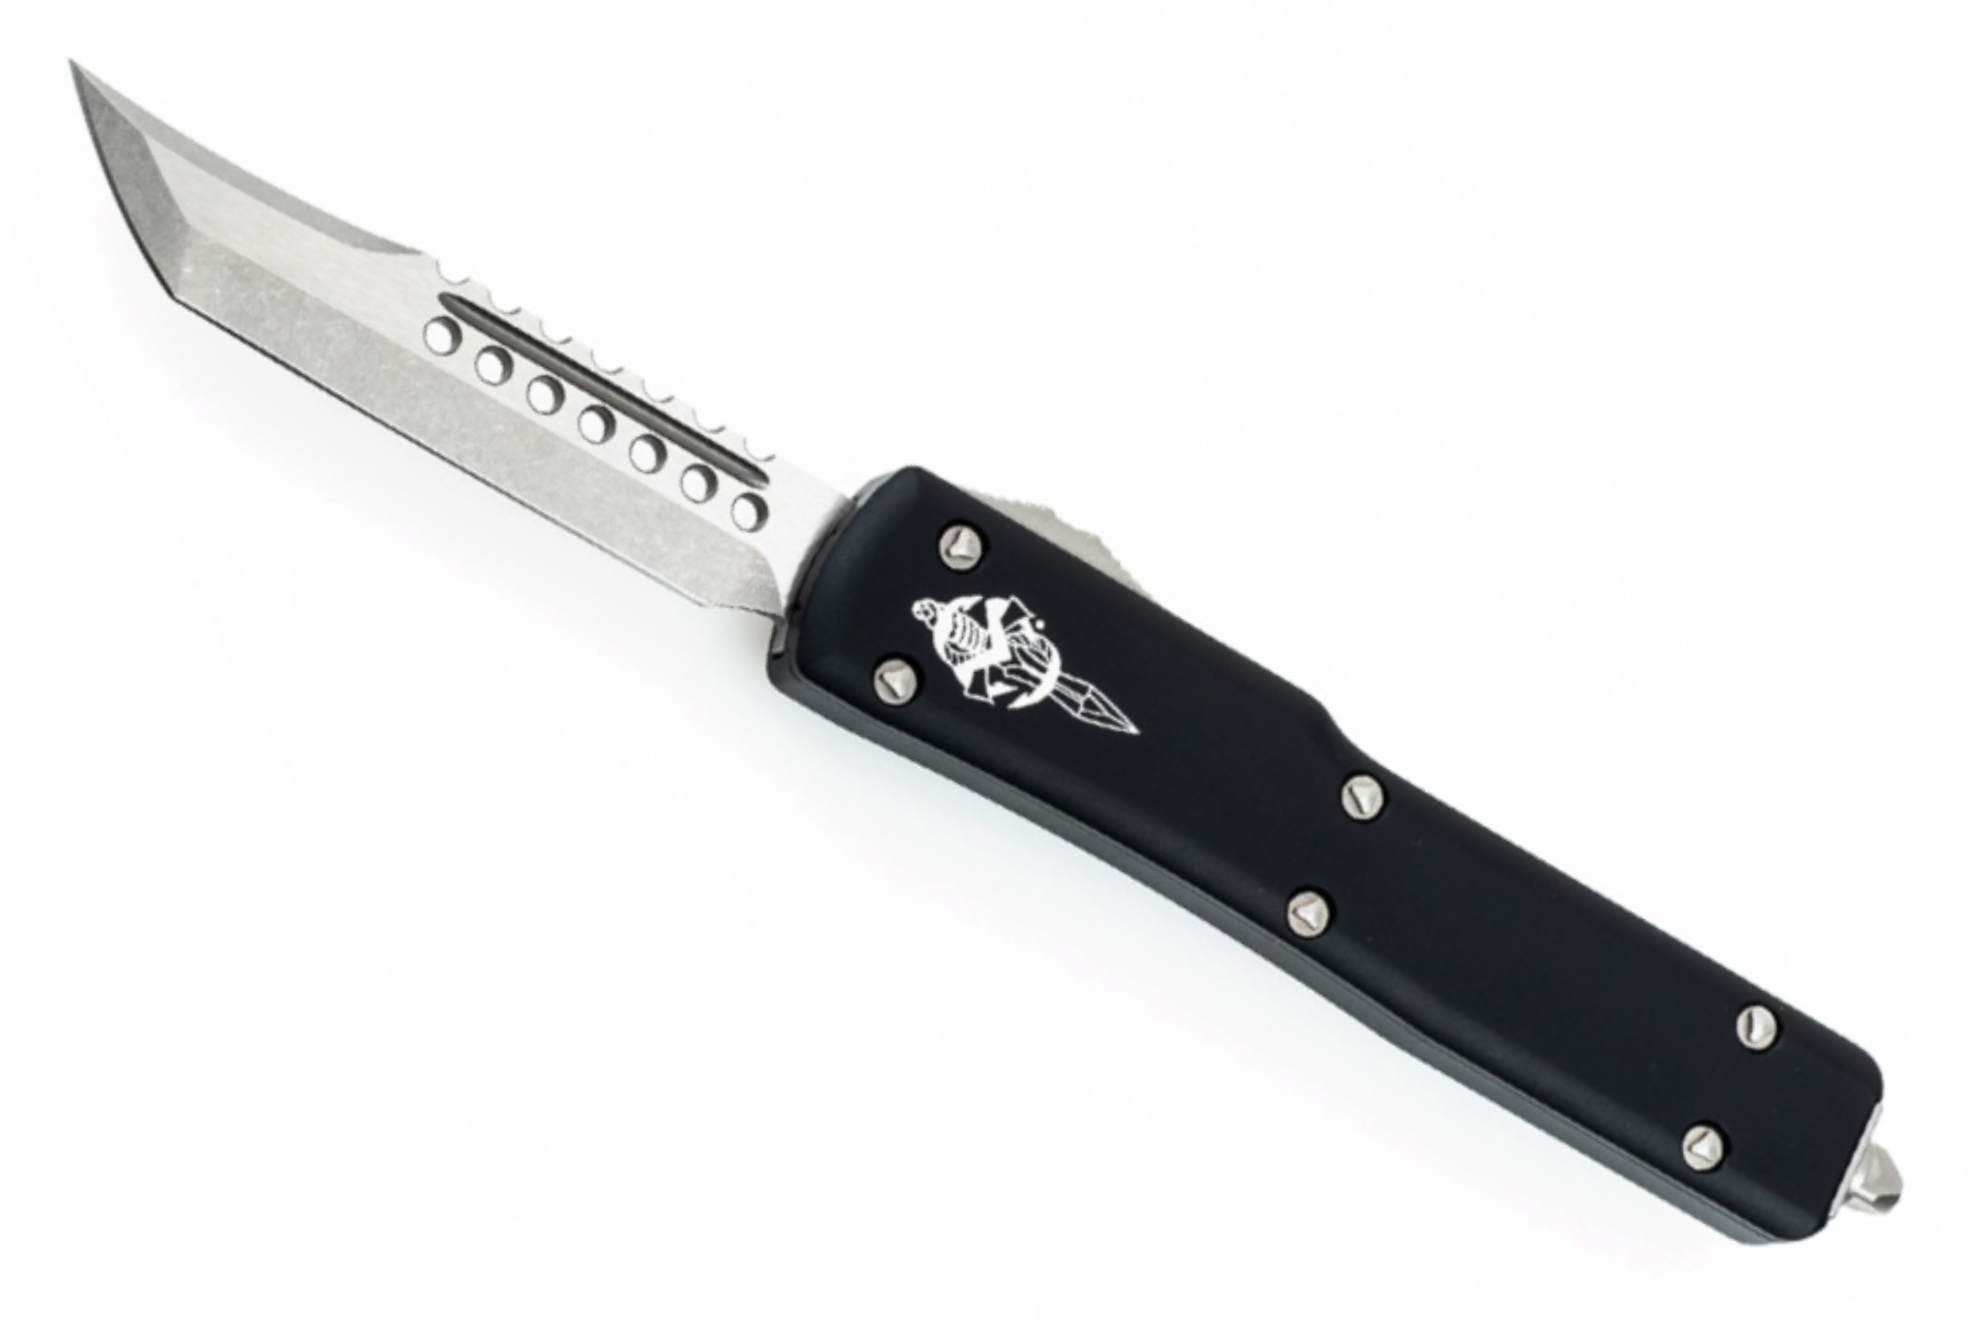 Автоматический складной нож «Hellhound» Microtech UTX-70 419-10s — Marfione Signature. Сталь M390.